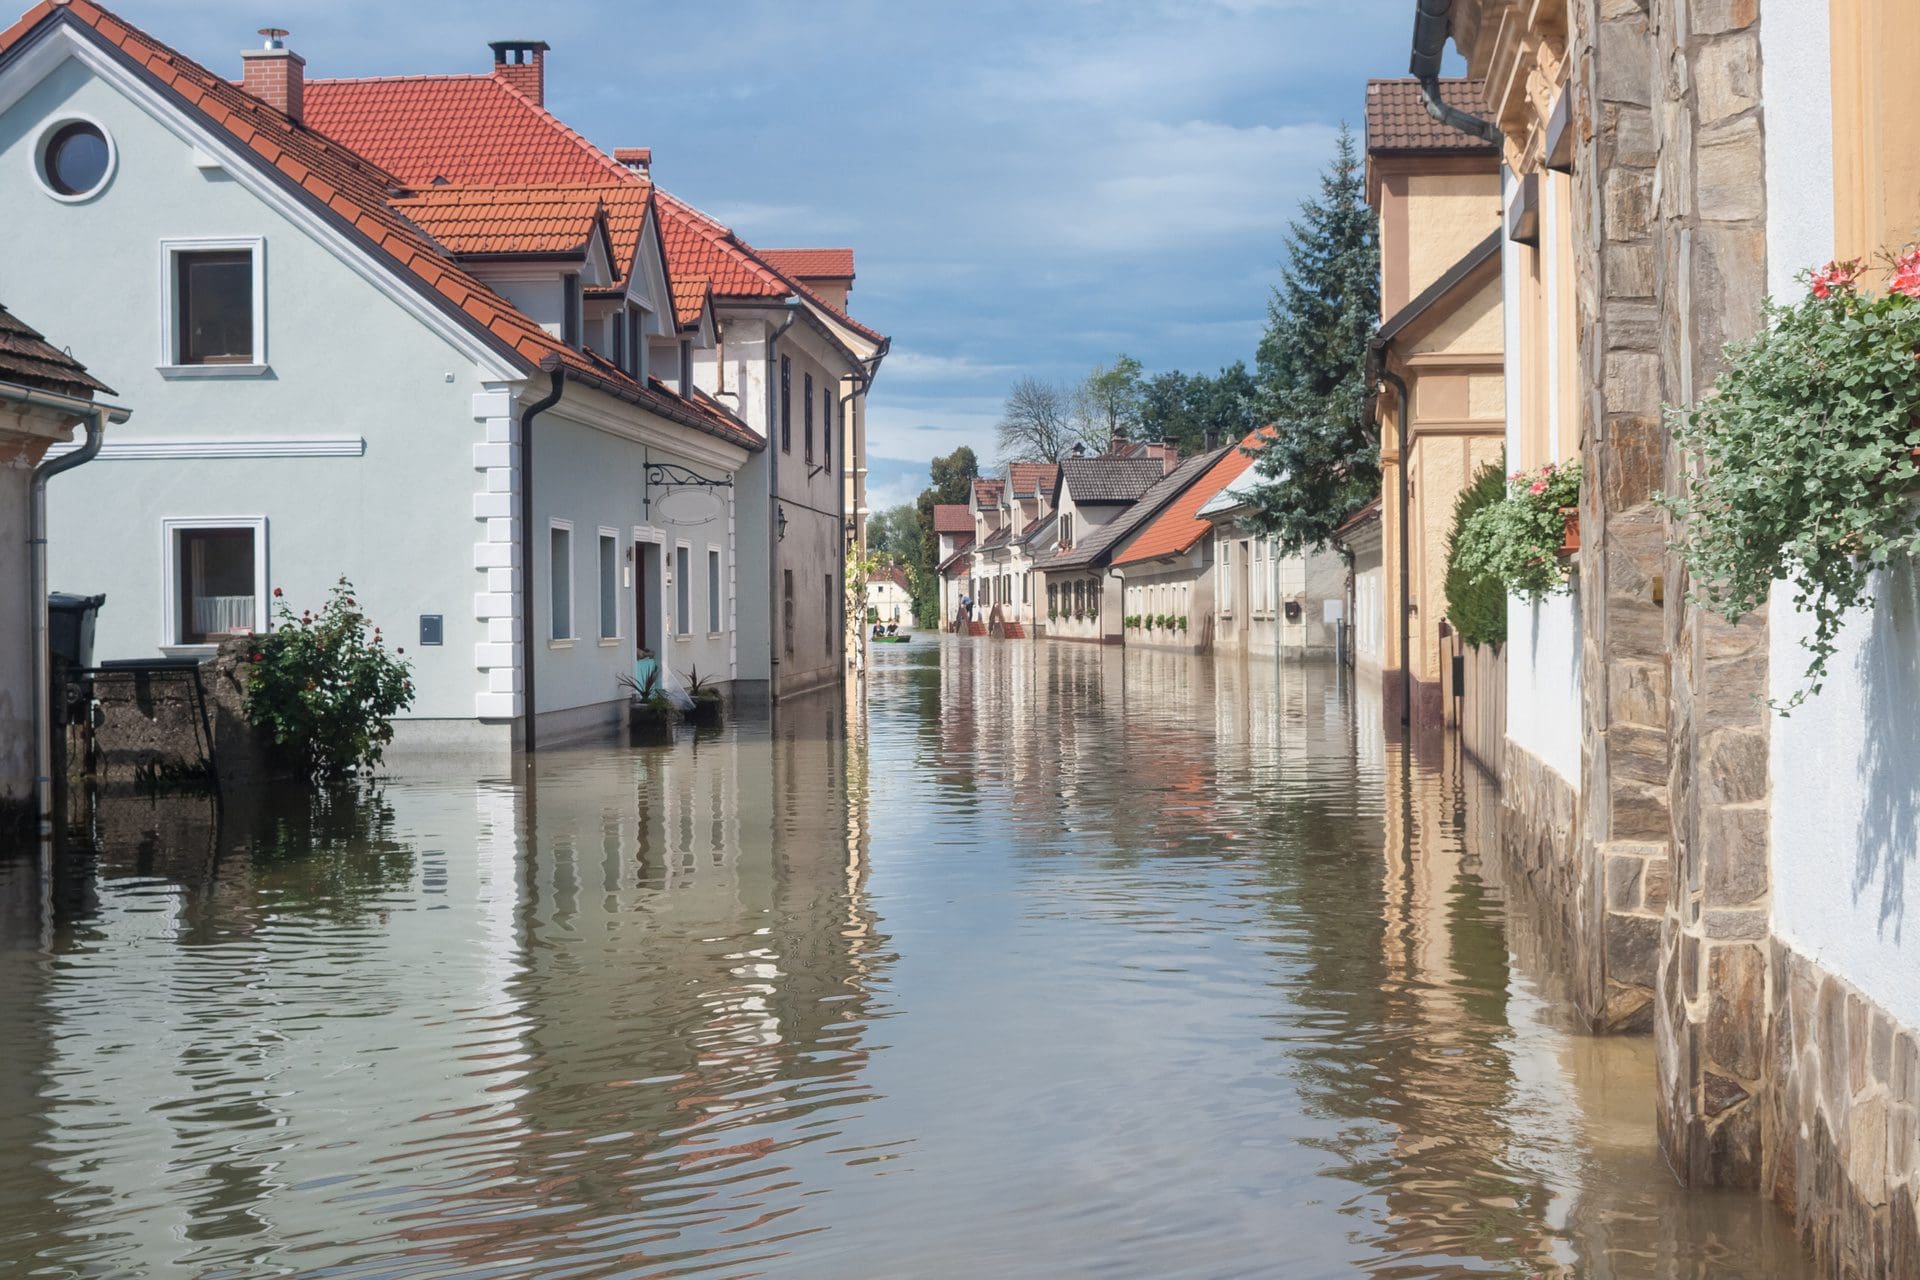 Hochwasser | Versicherung will Hochwasserschäden nicht zahlen? (© kasto / stock.adobe.com)